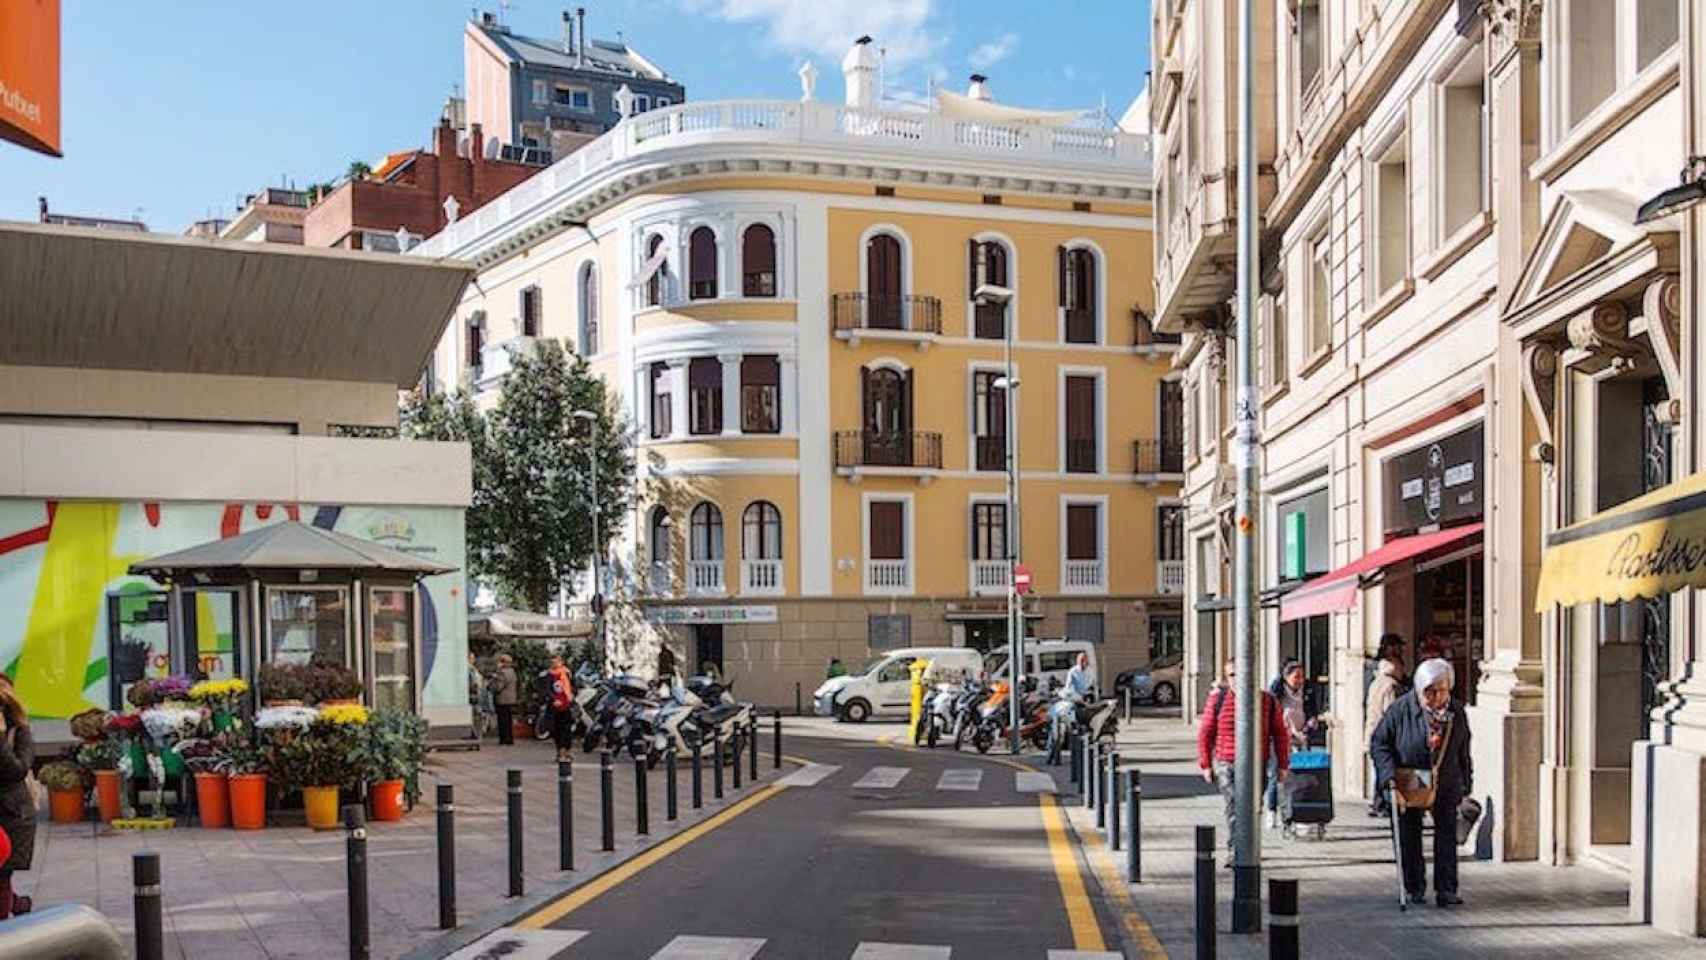 Calle de Sarrià-Sant Gervasi, el barrio más caro de Barcelona / AJUNTAMENT DE BARCELONA